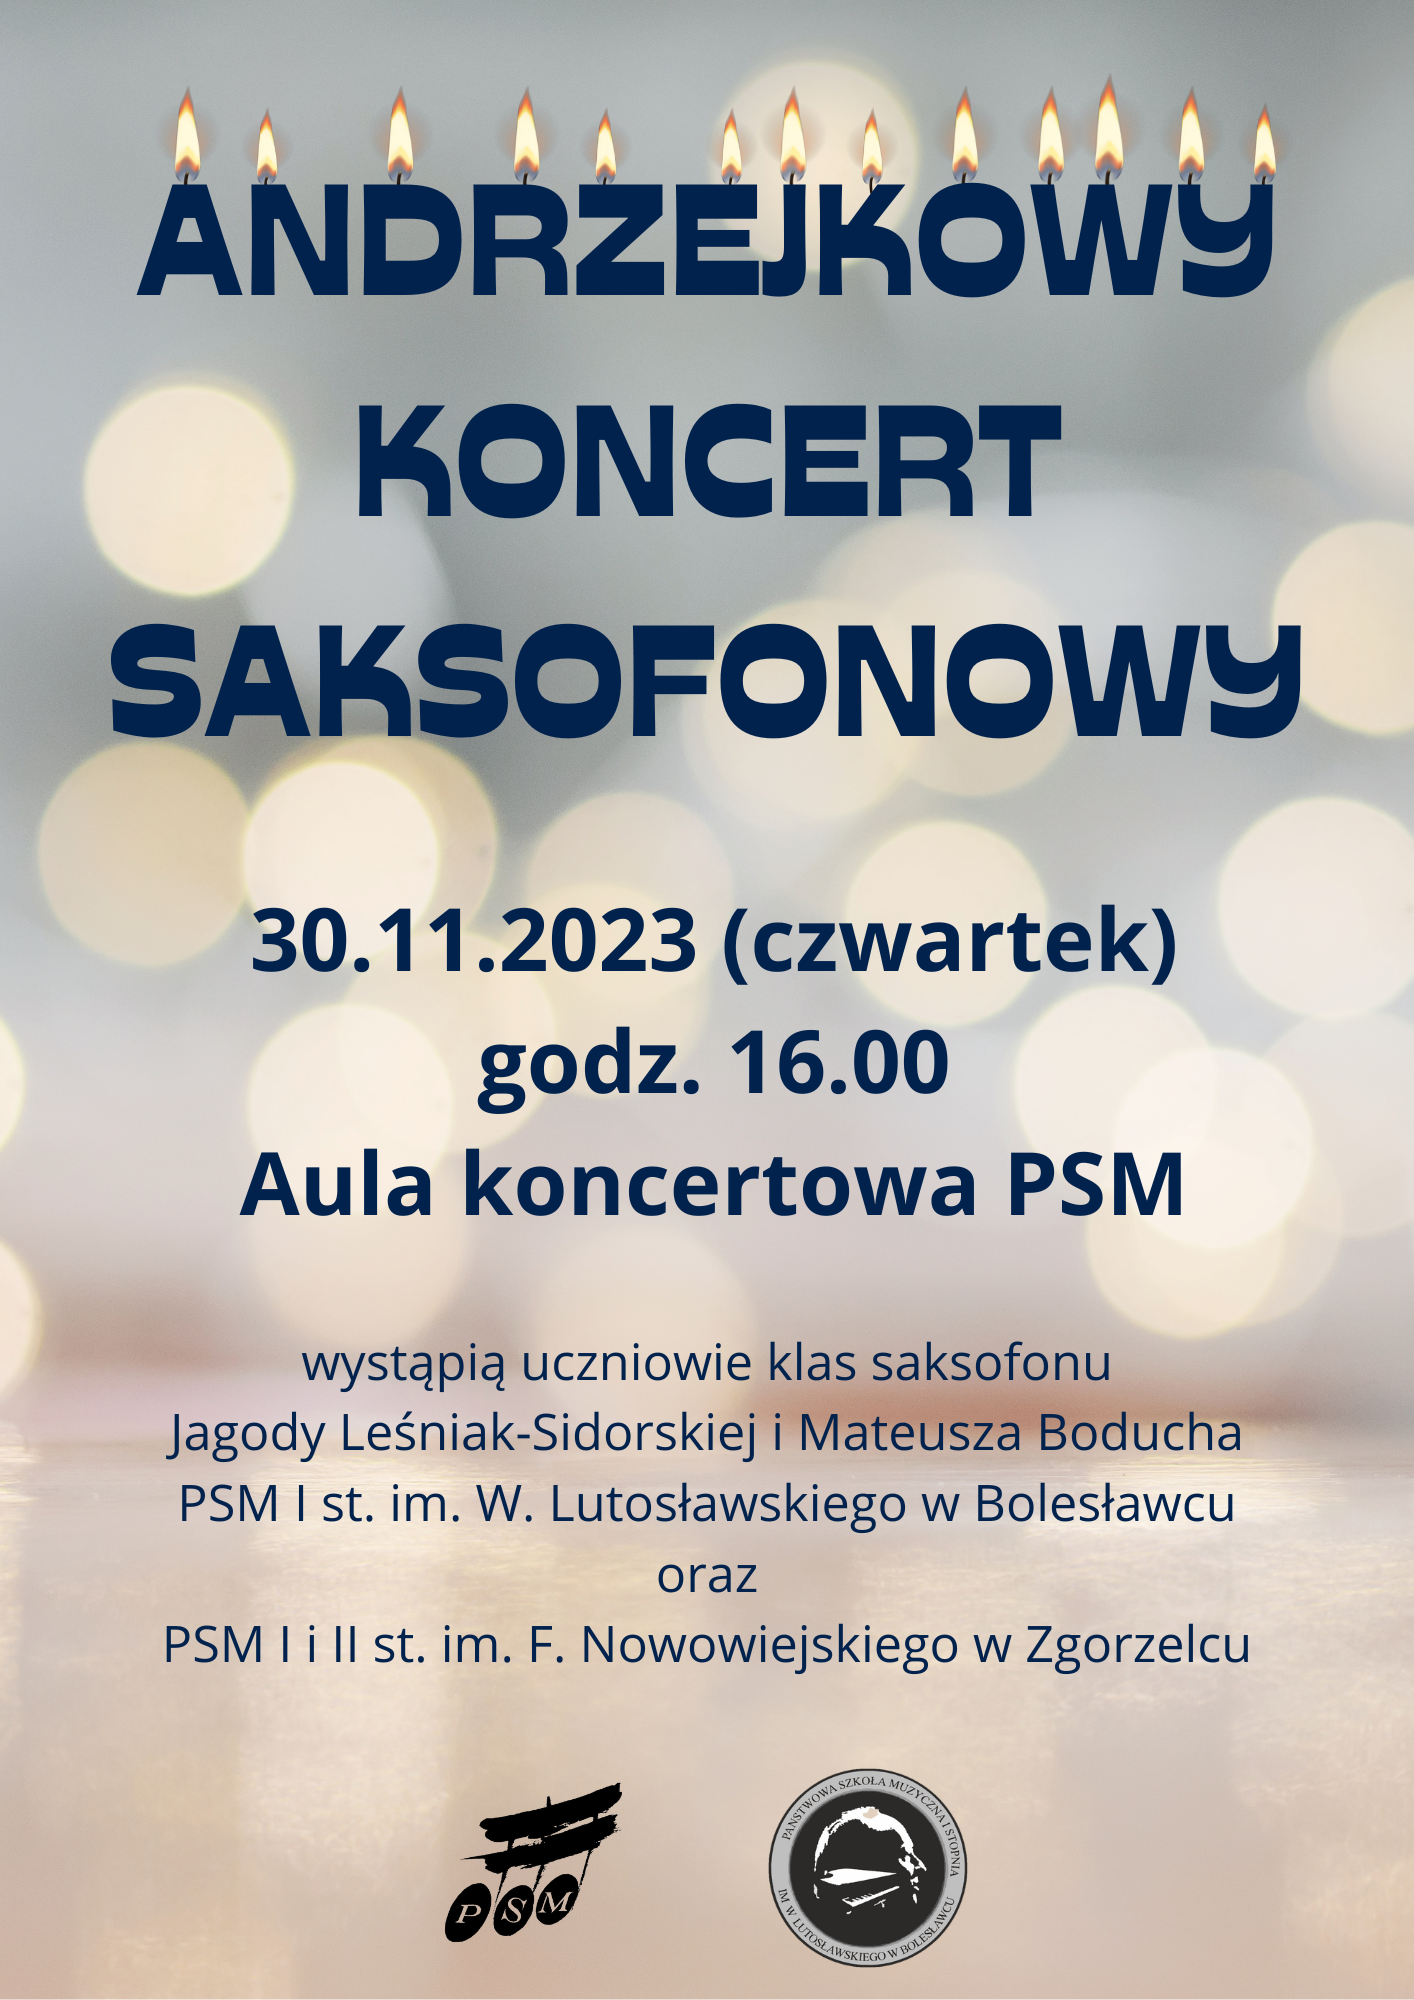 Andrzejkowy Koncert Saksofonowy